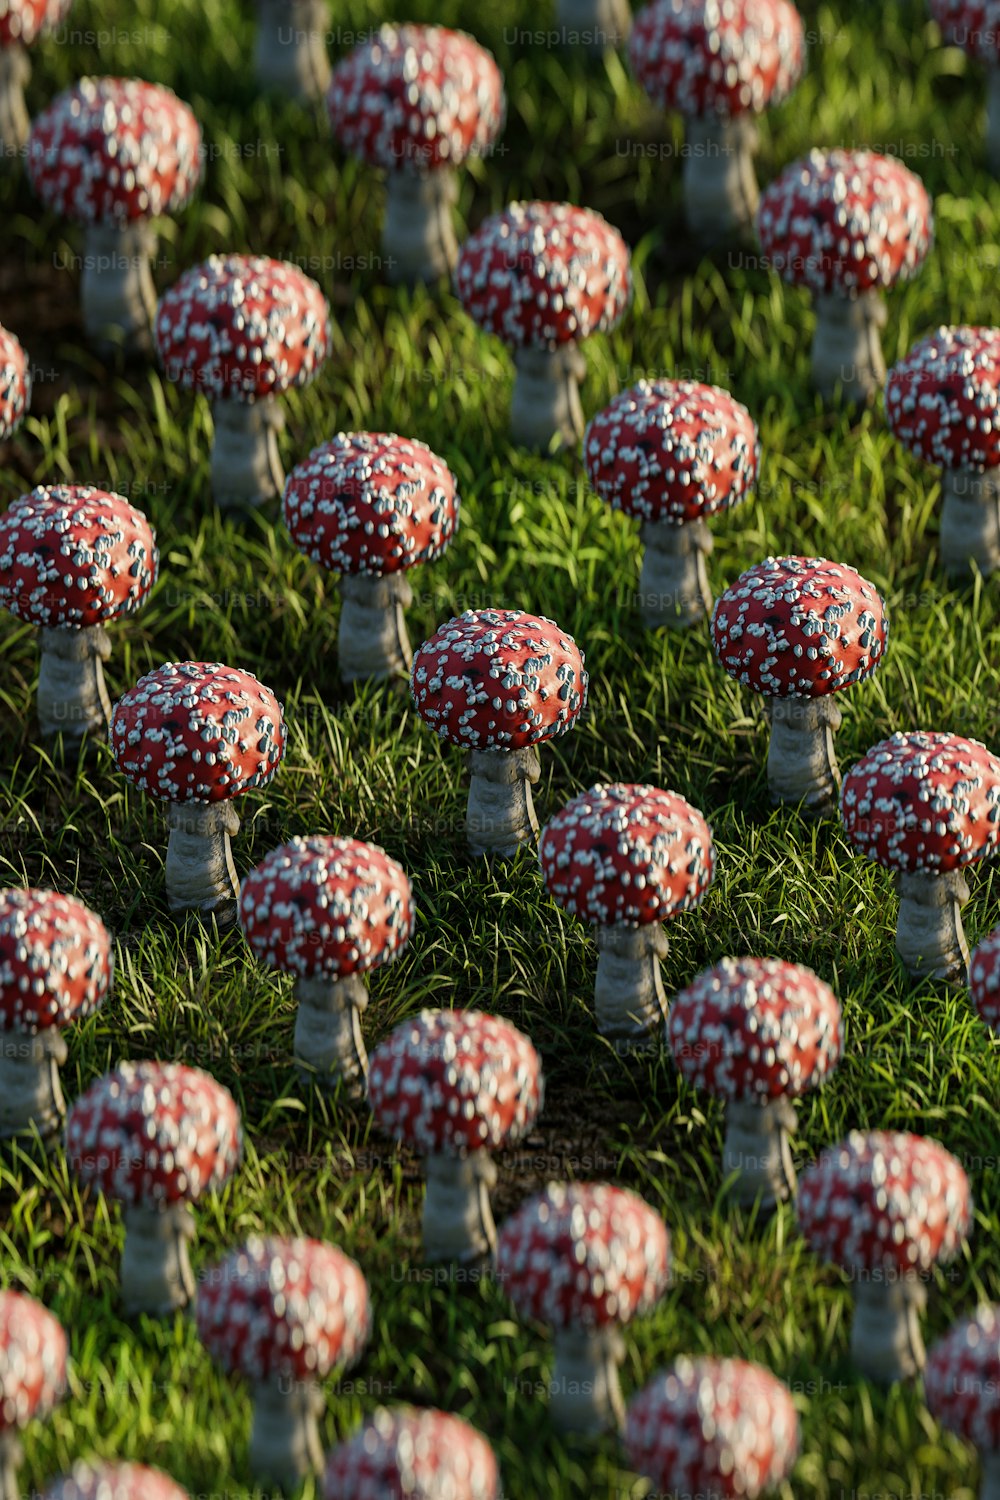 Un champ plein de minuscules champignons rouges et blancs